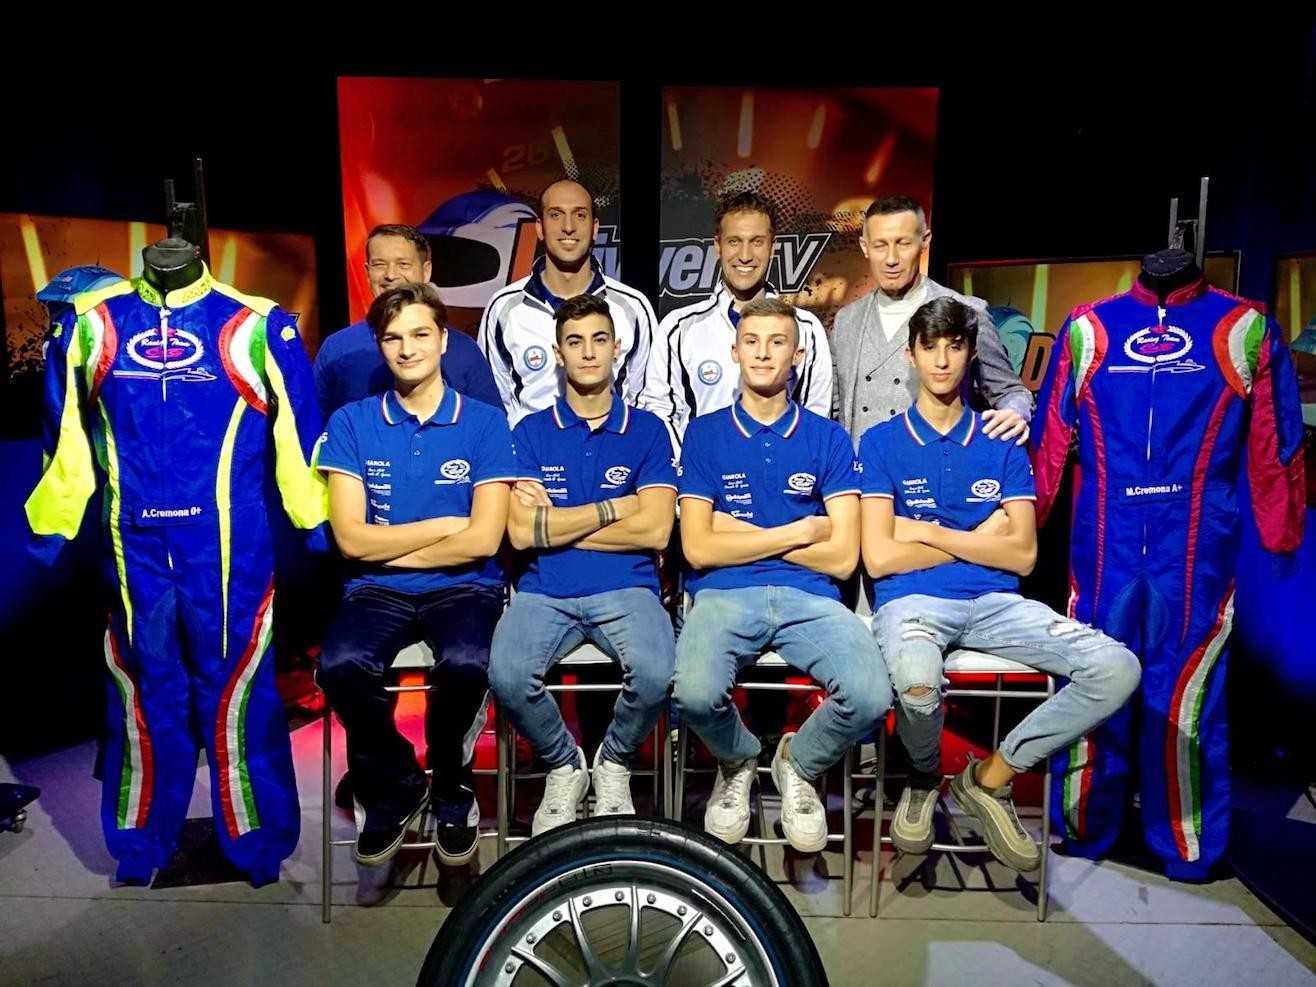 Il 5 volte campione mondiale di motonautica ospite con il suo team in una Tv nazionale